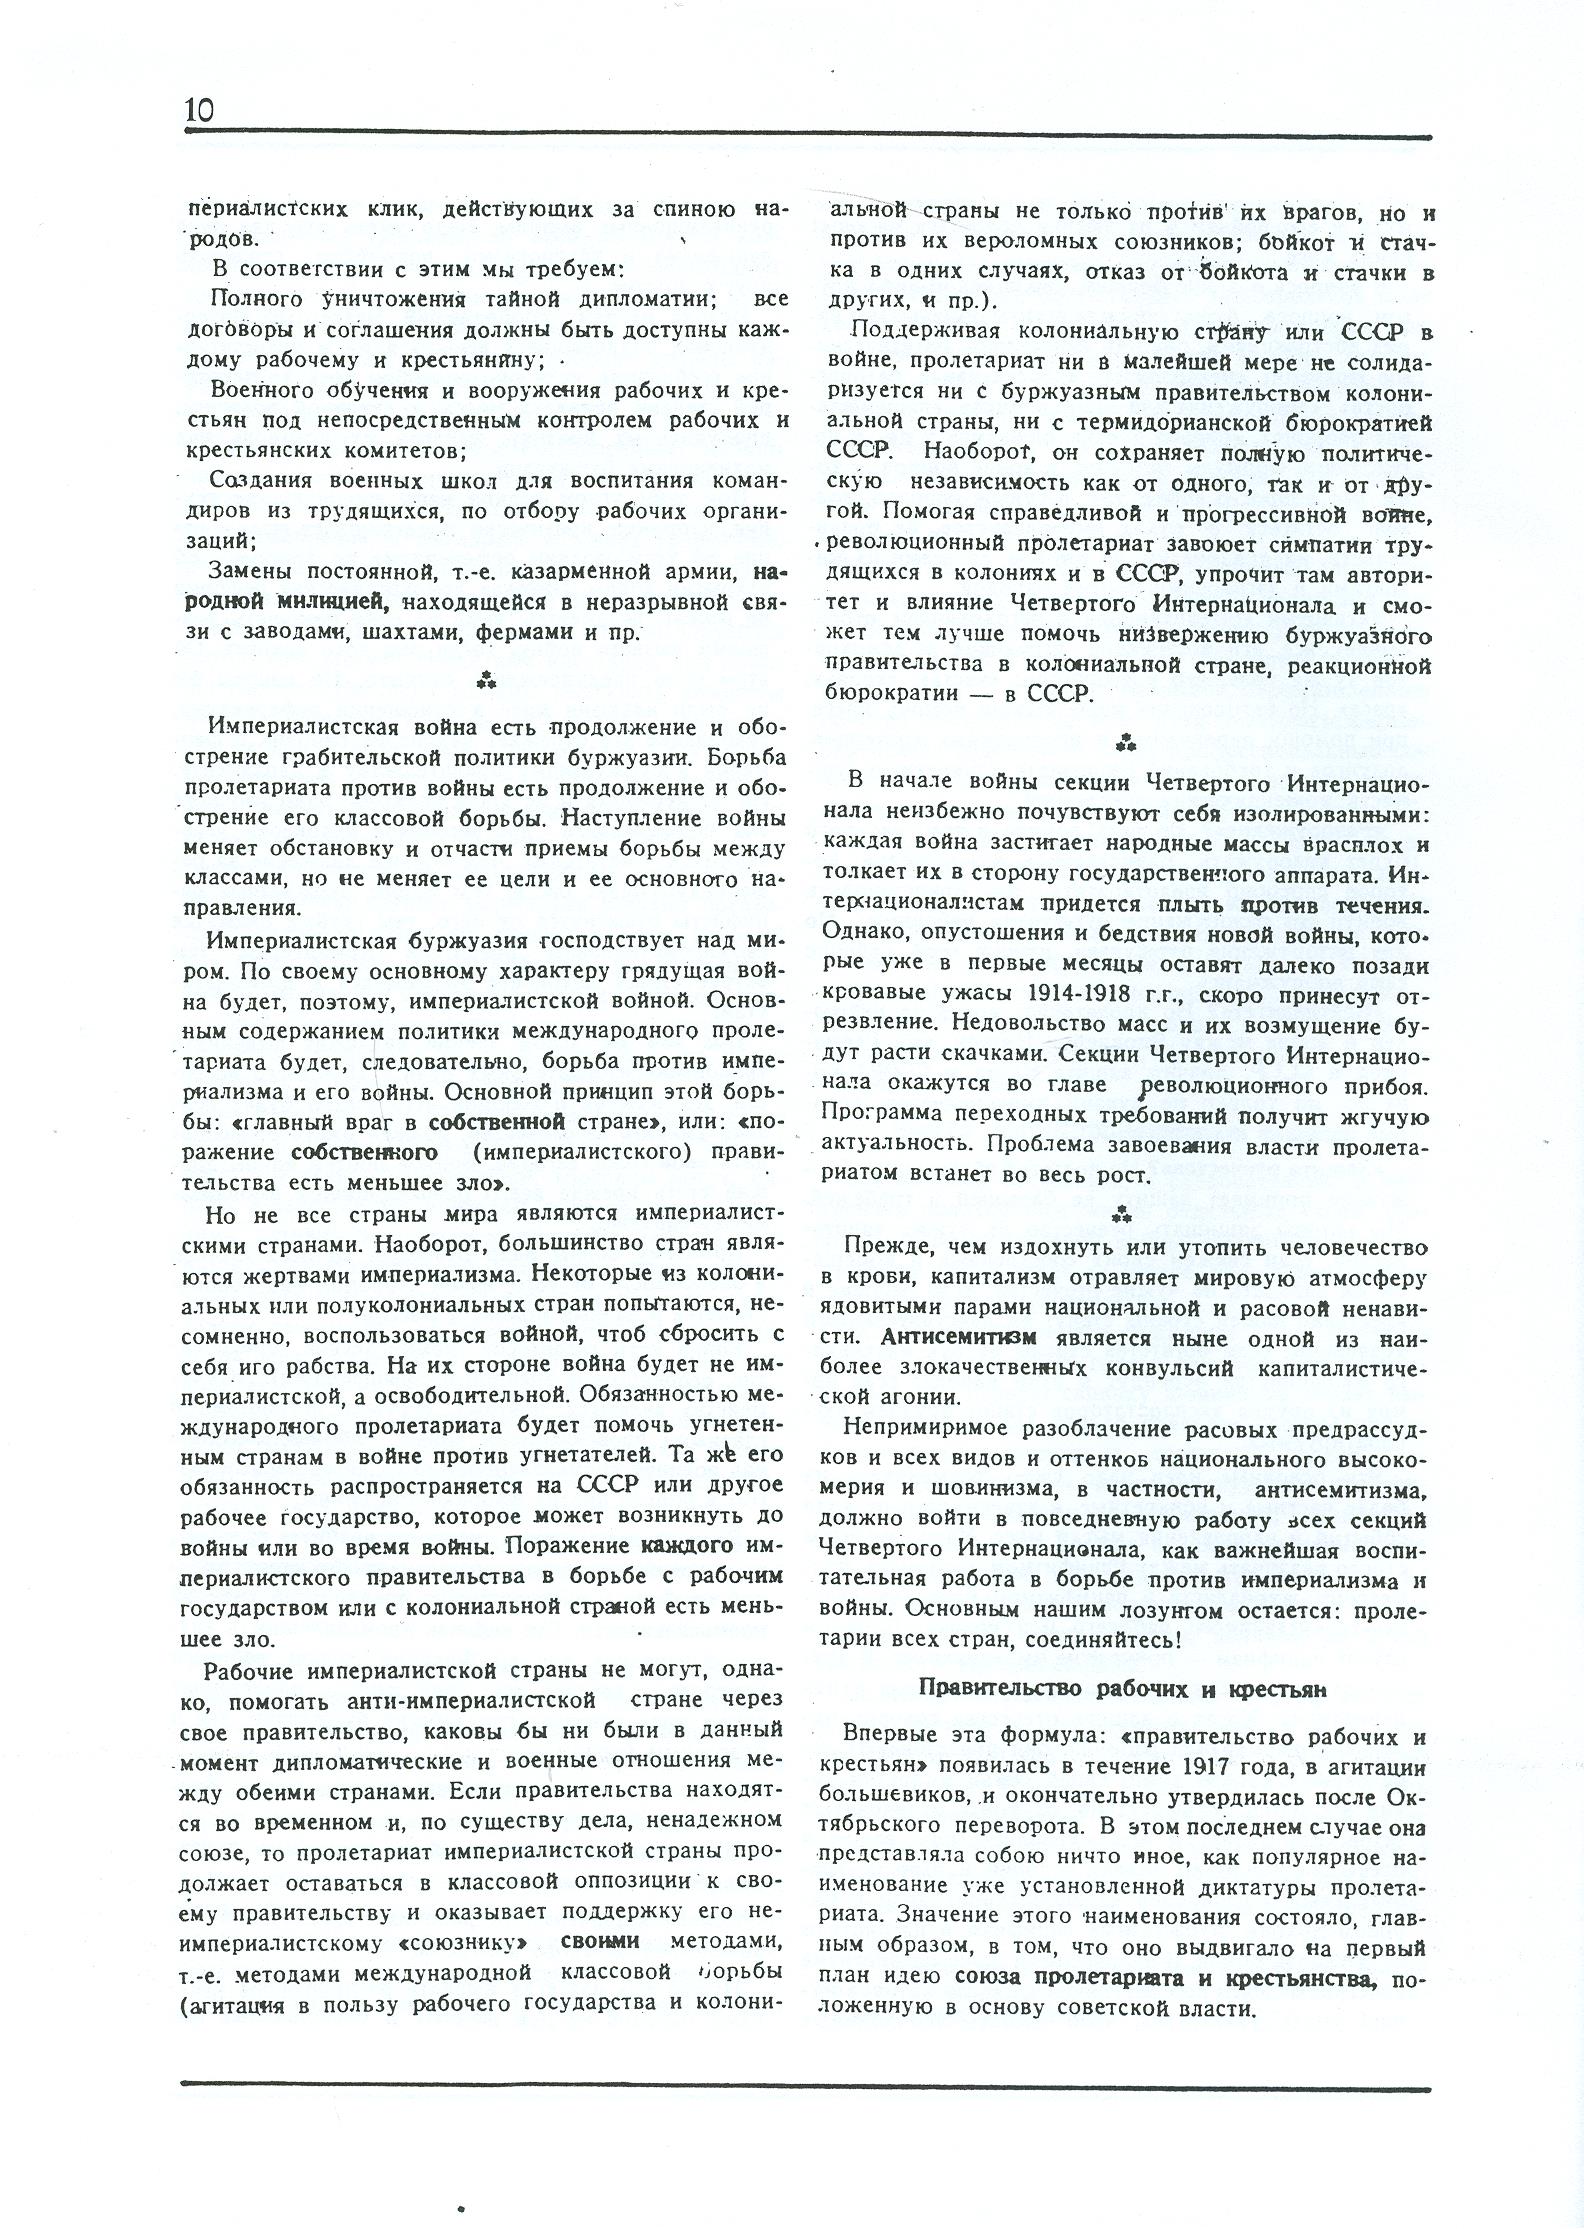 Dagli archivi del bolscevismo n. 1 (marzo 1986) - pag. 10